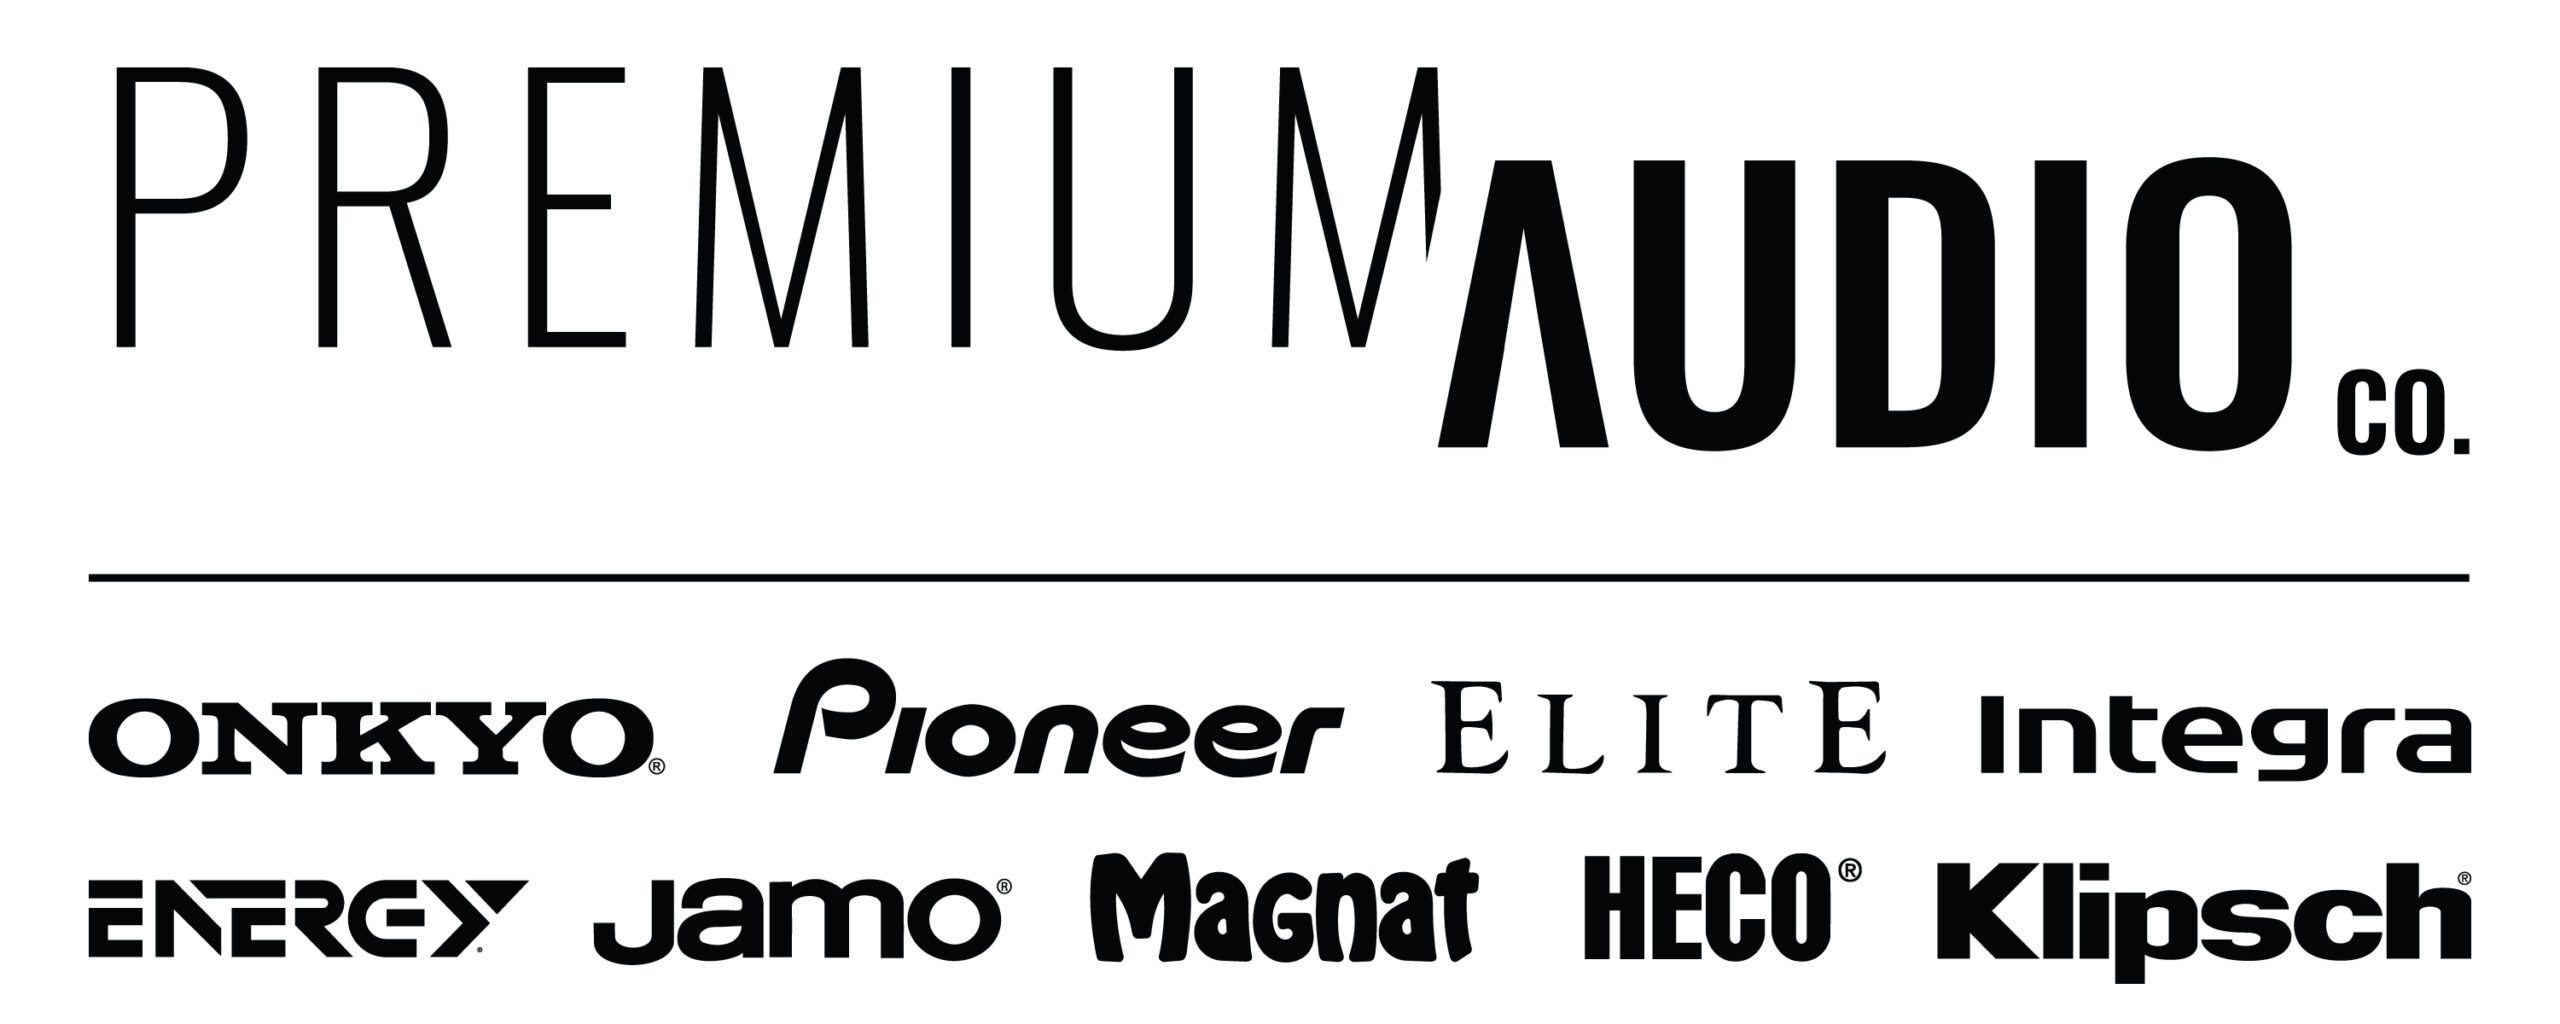 Premium Audio Company logo